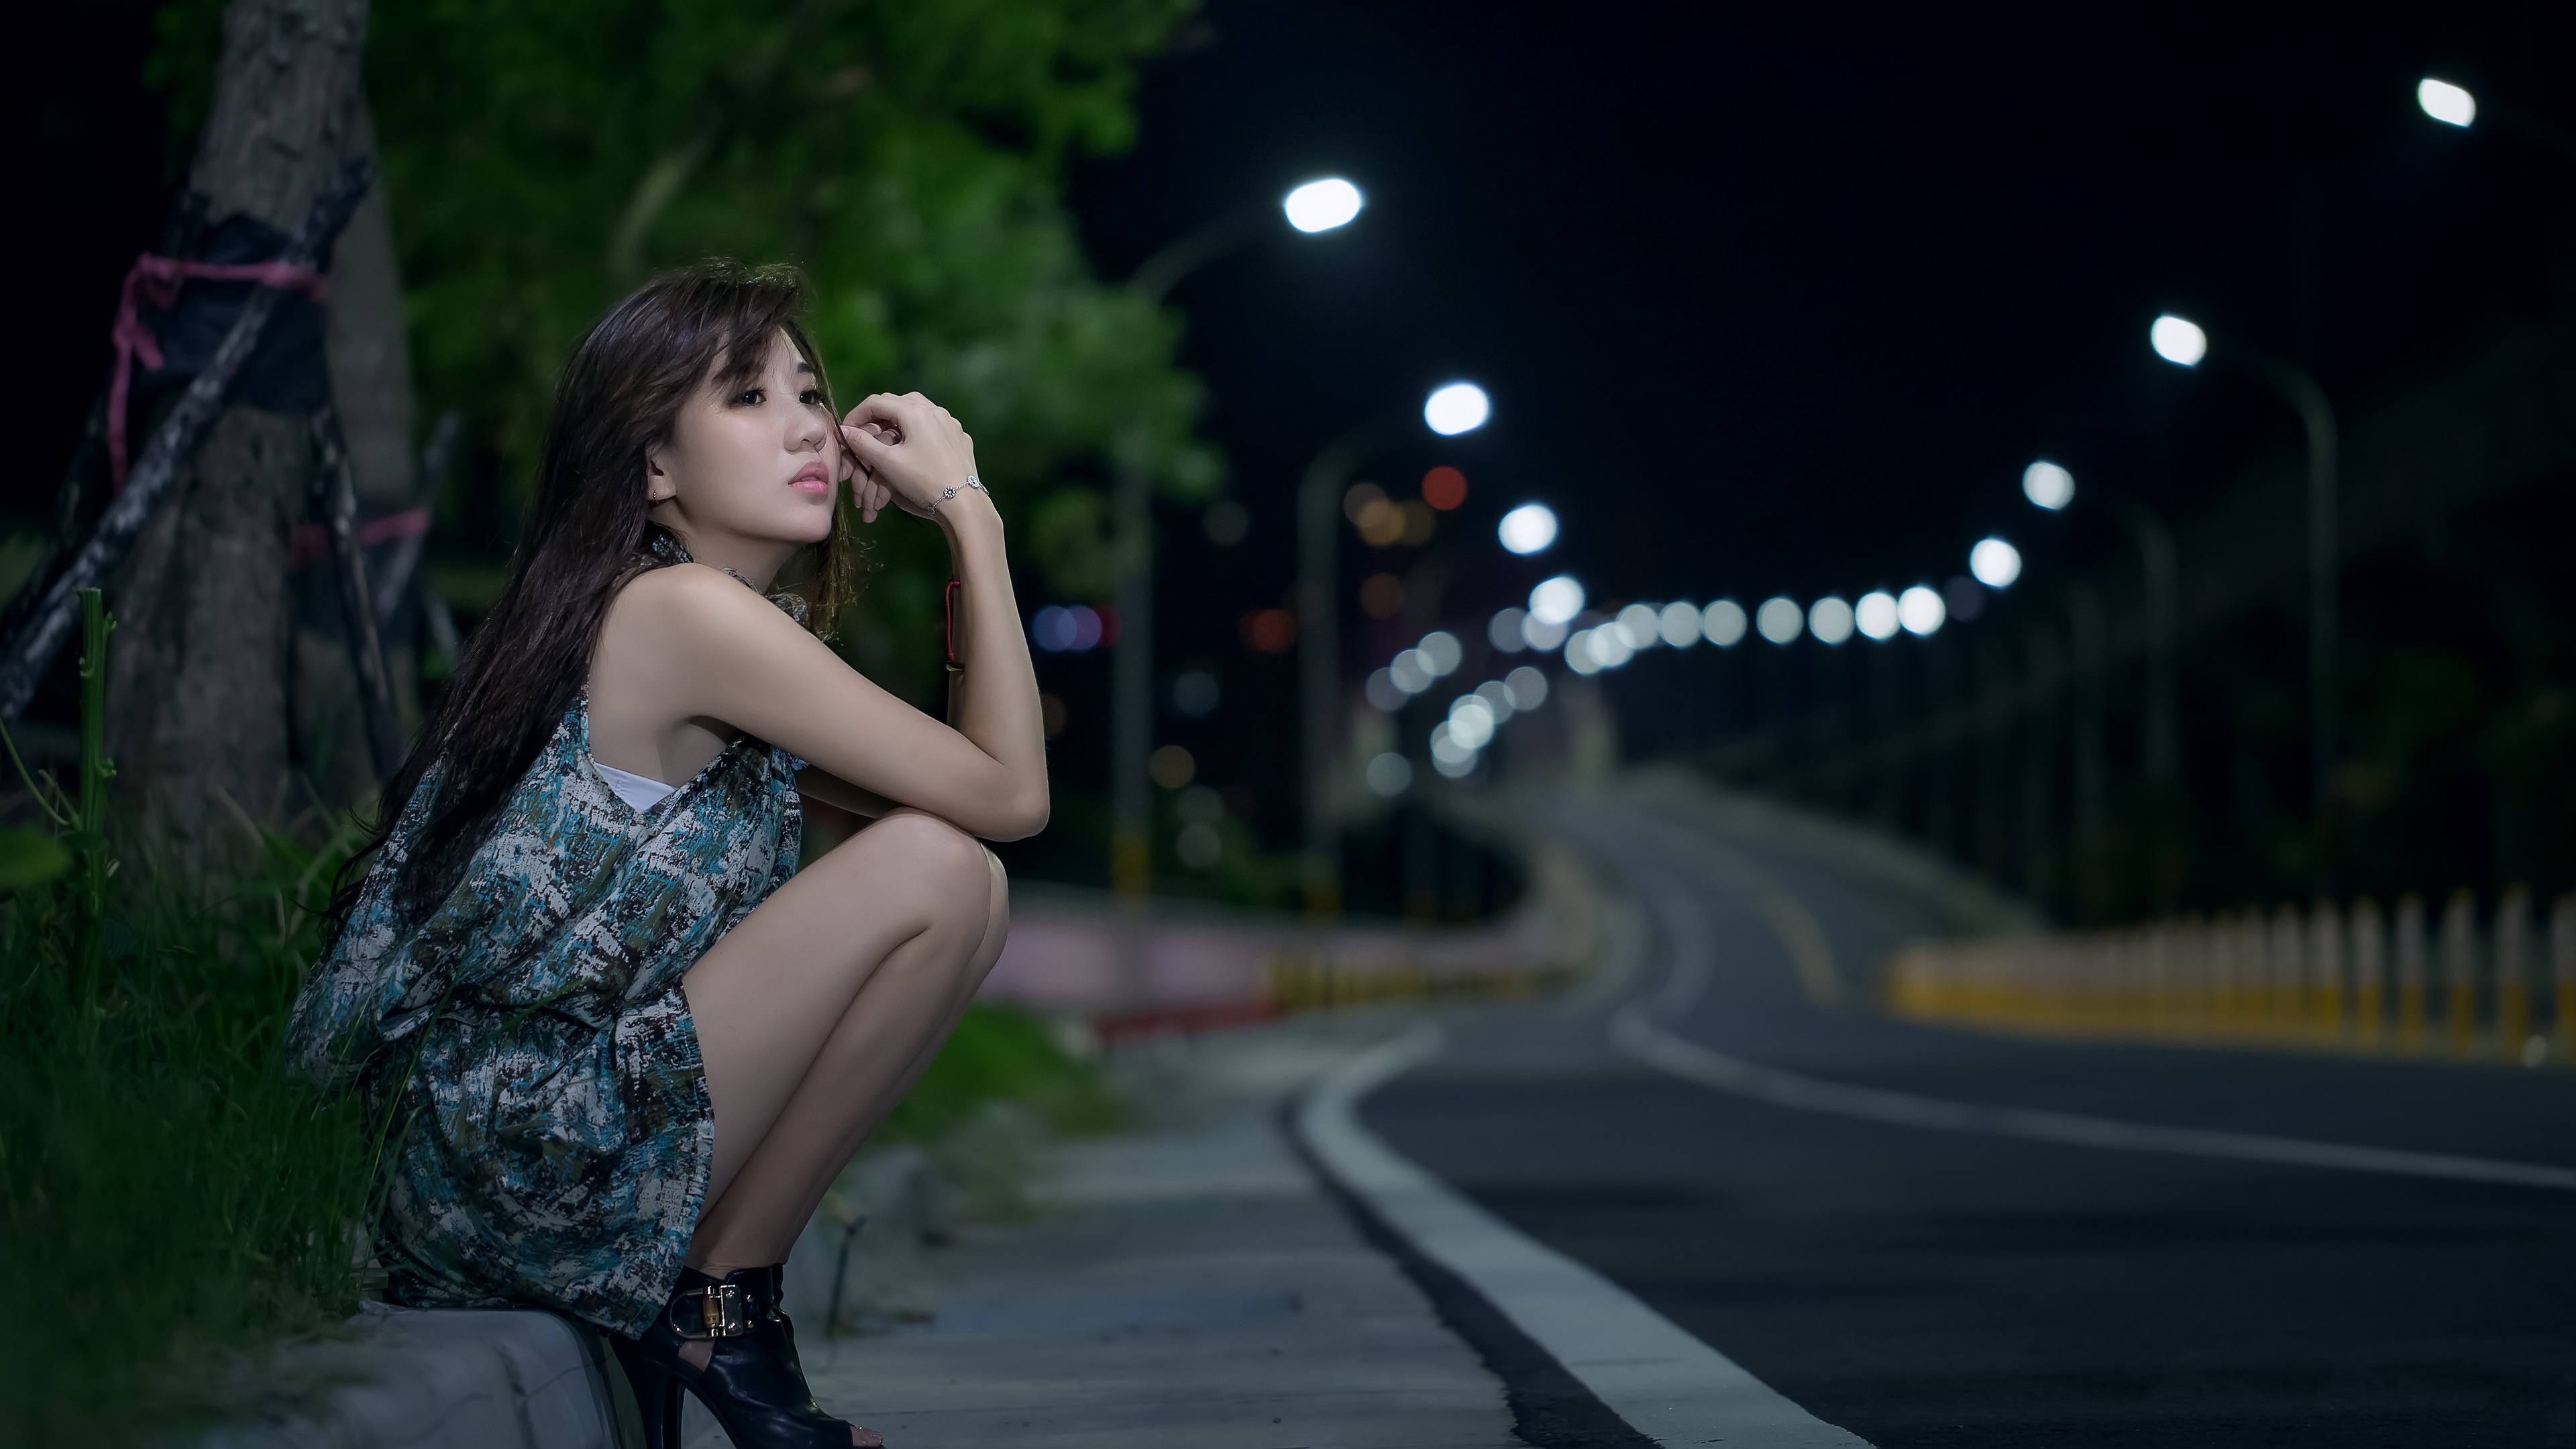 Asian Women Model Women Outdoors Brunette Pink Lipstick Sitting Road Asphalt Makeup Long Hair Dress  3840x2160